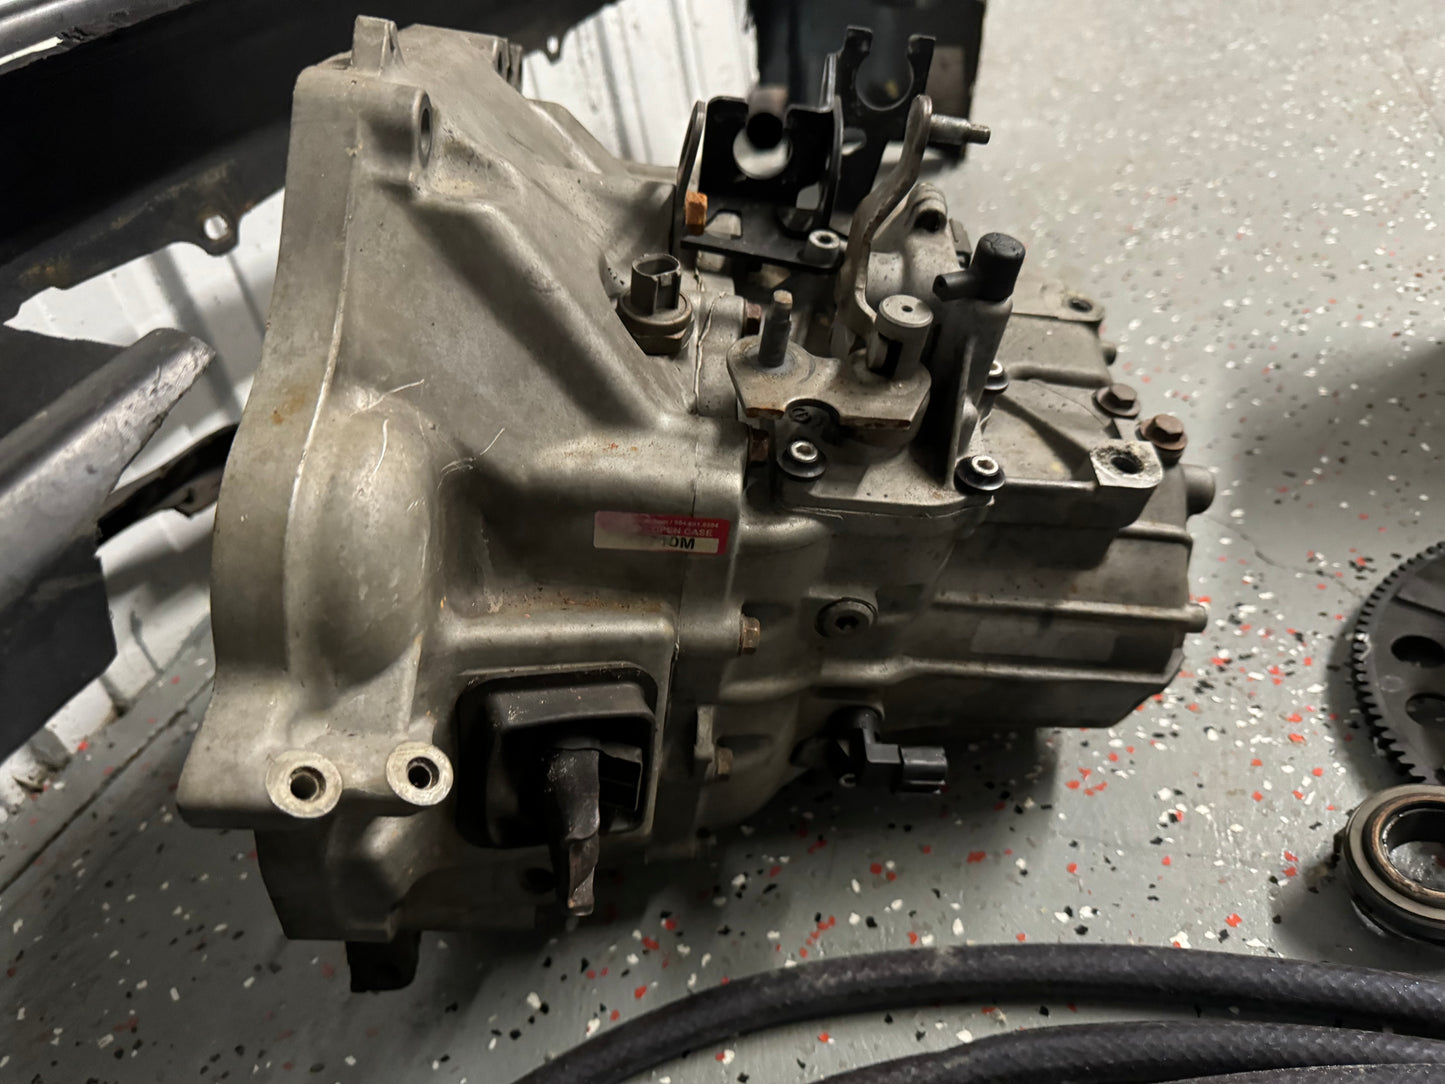 Used K20z1 transmission with gear x gears